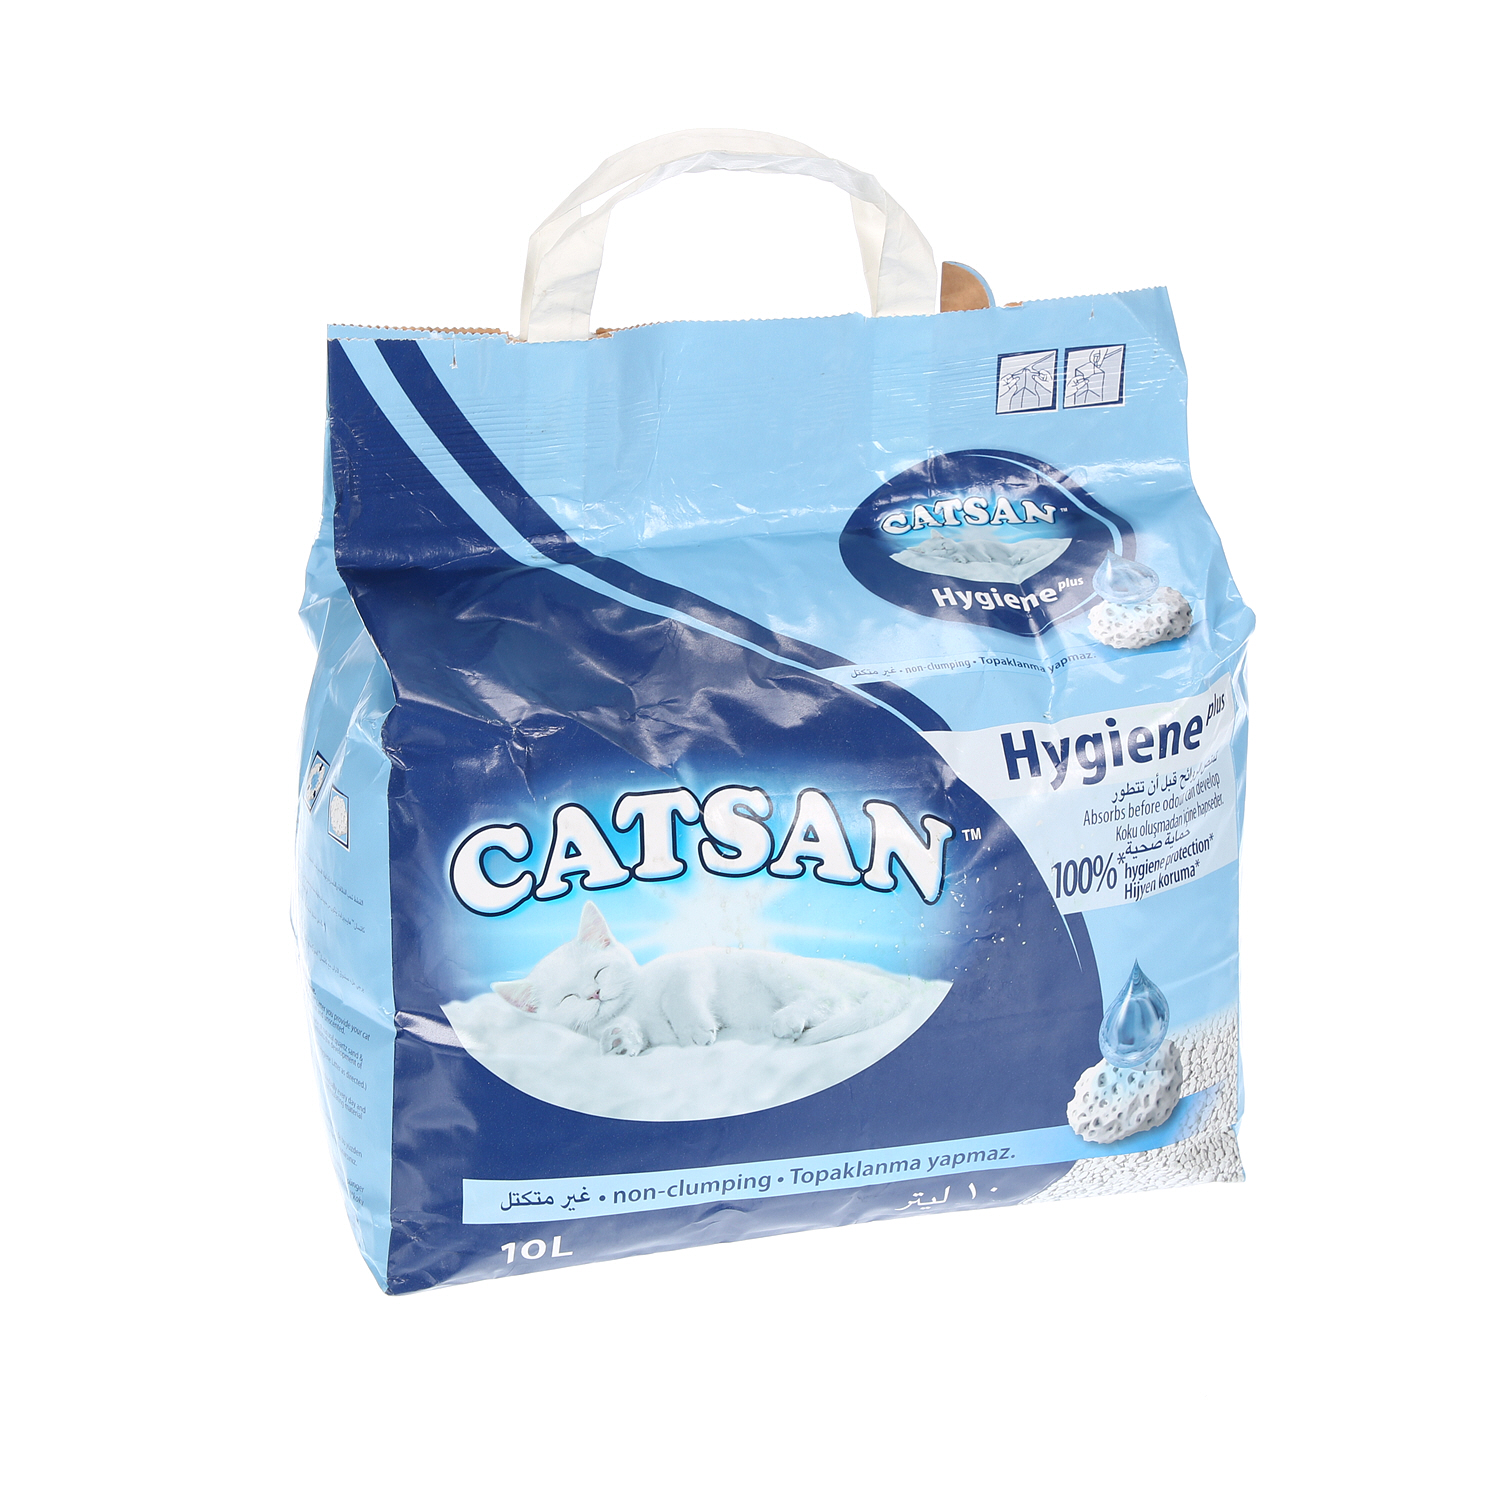 Catsan Hygiene Litter 10Ltr